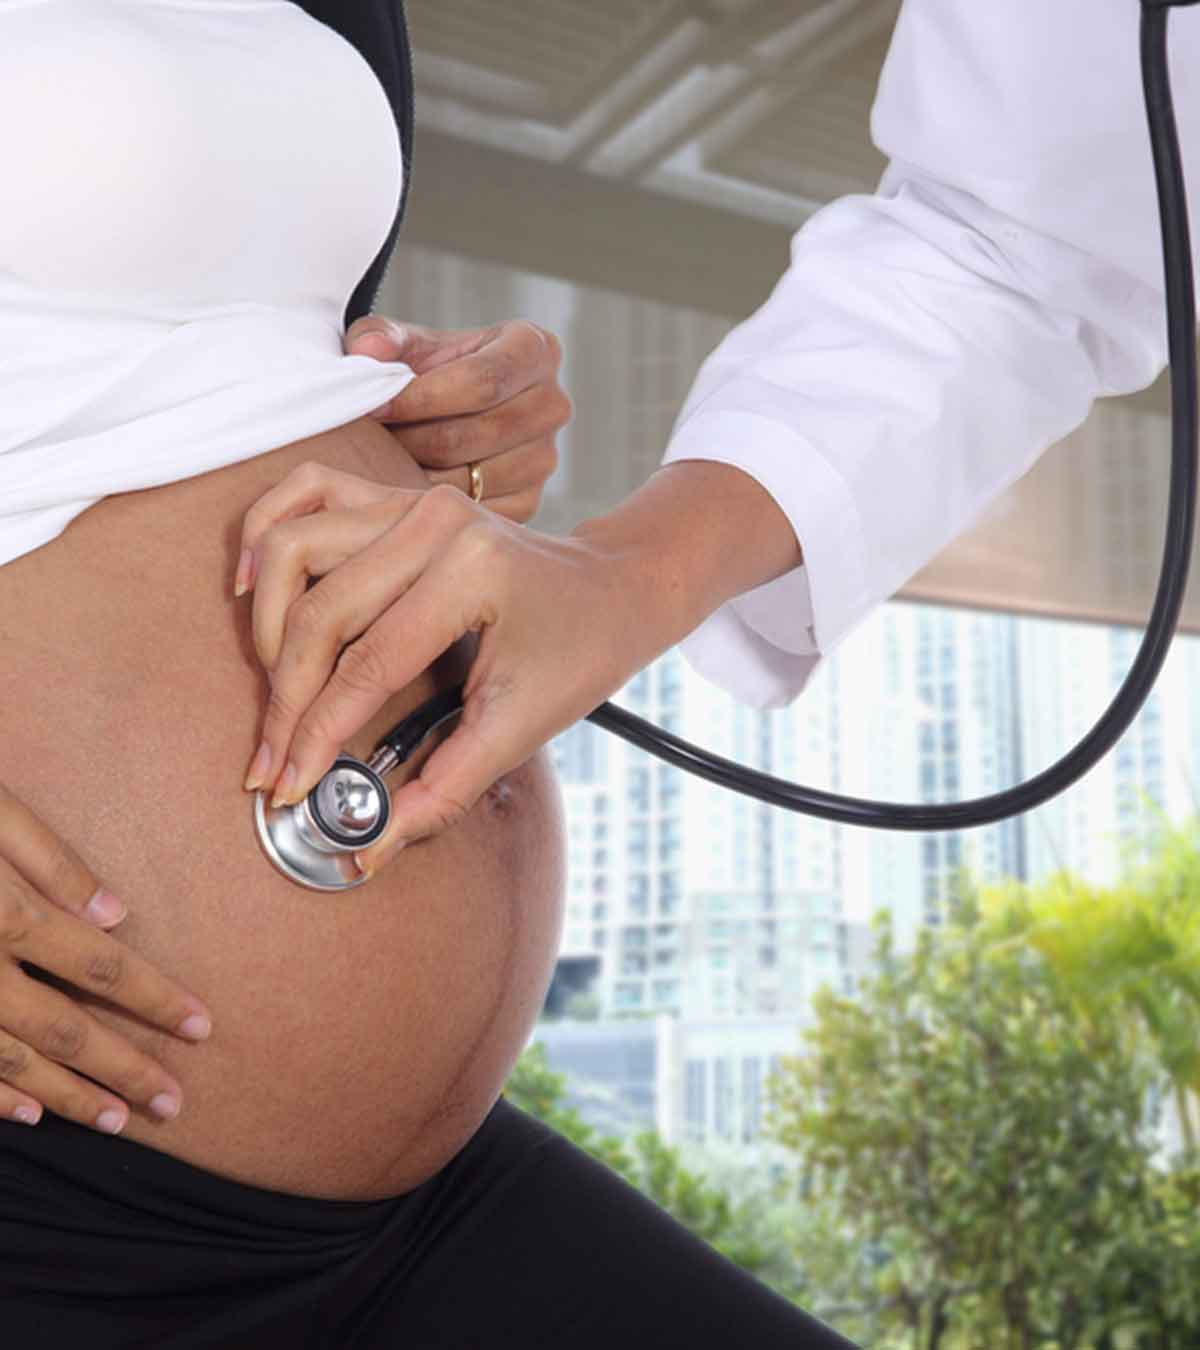 प्रेगनेंसी के दौरान कौन-कौन से टेस्ट होते हैं? | Pregnancy Me Kaun Kaun Se Test Hote Hai